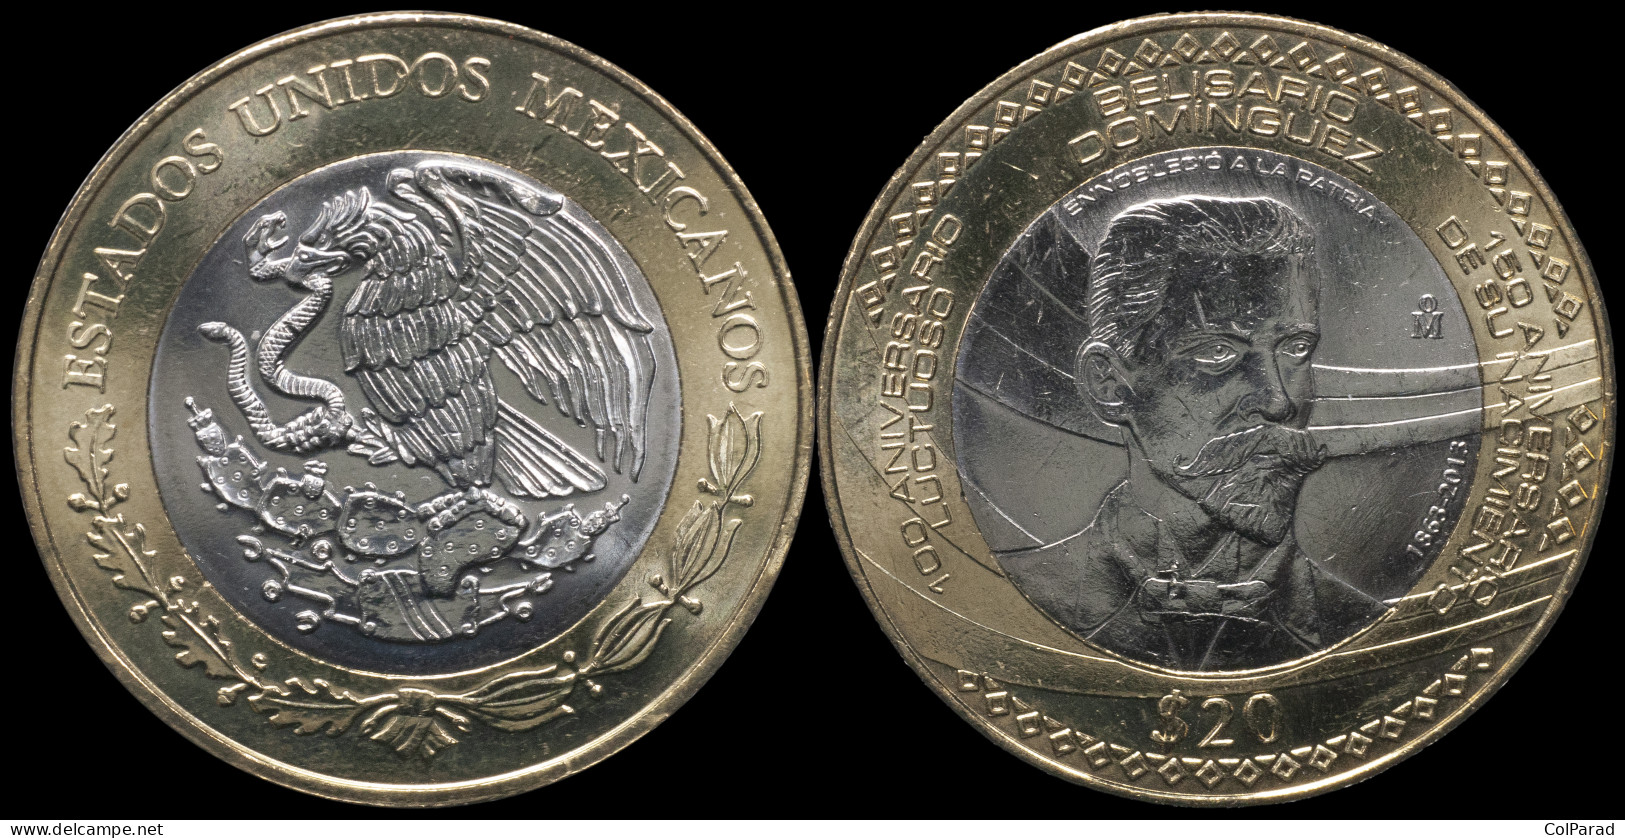 MEXICO COIN 20 PESOS - KM#970 Bi-Metallic Unc - 2013 - Belisario Domínguez - Mexiko